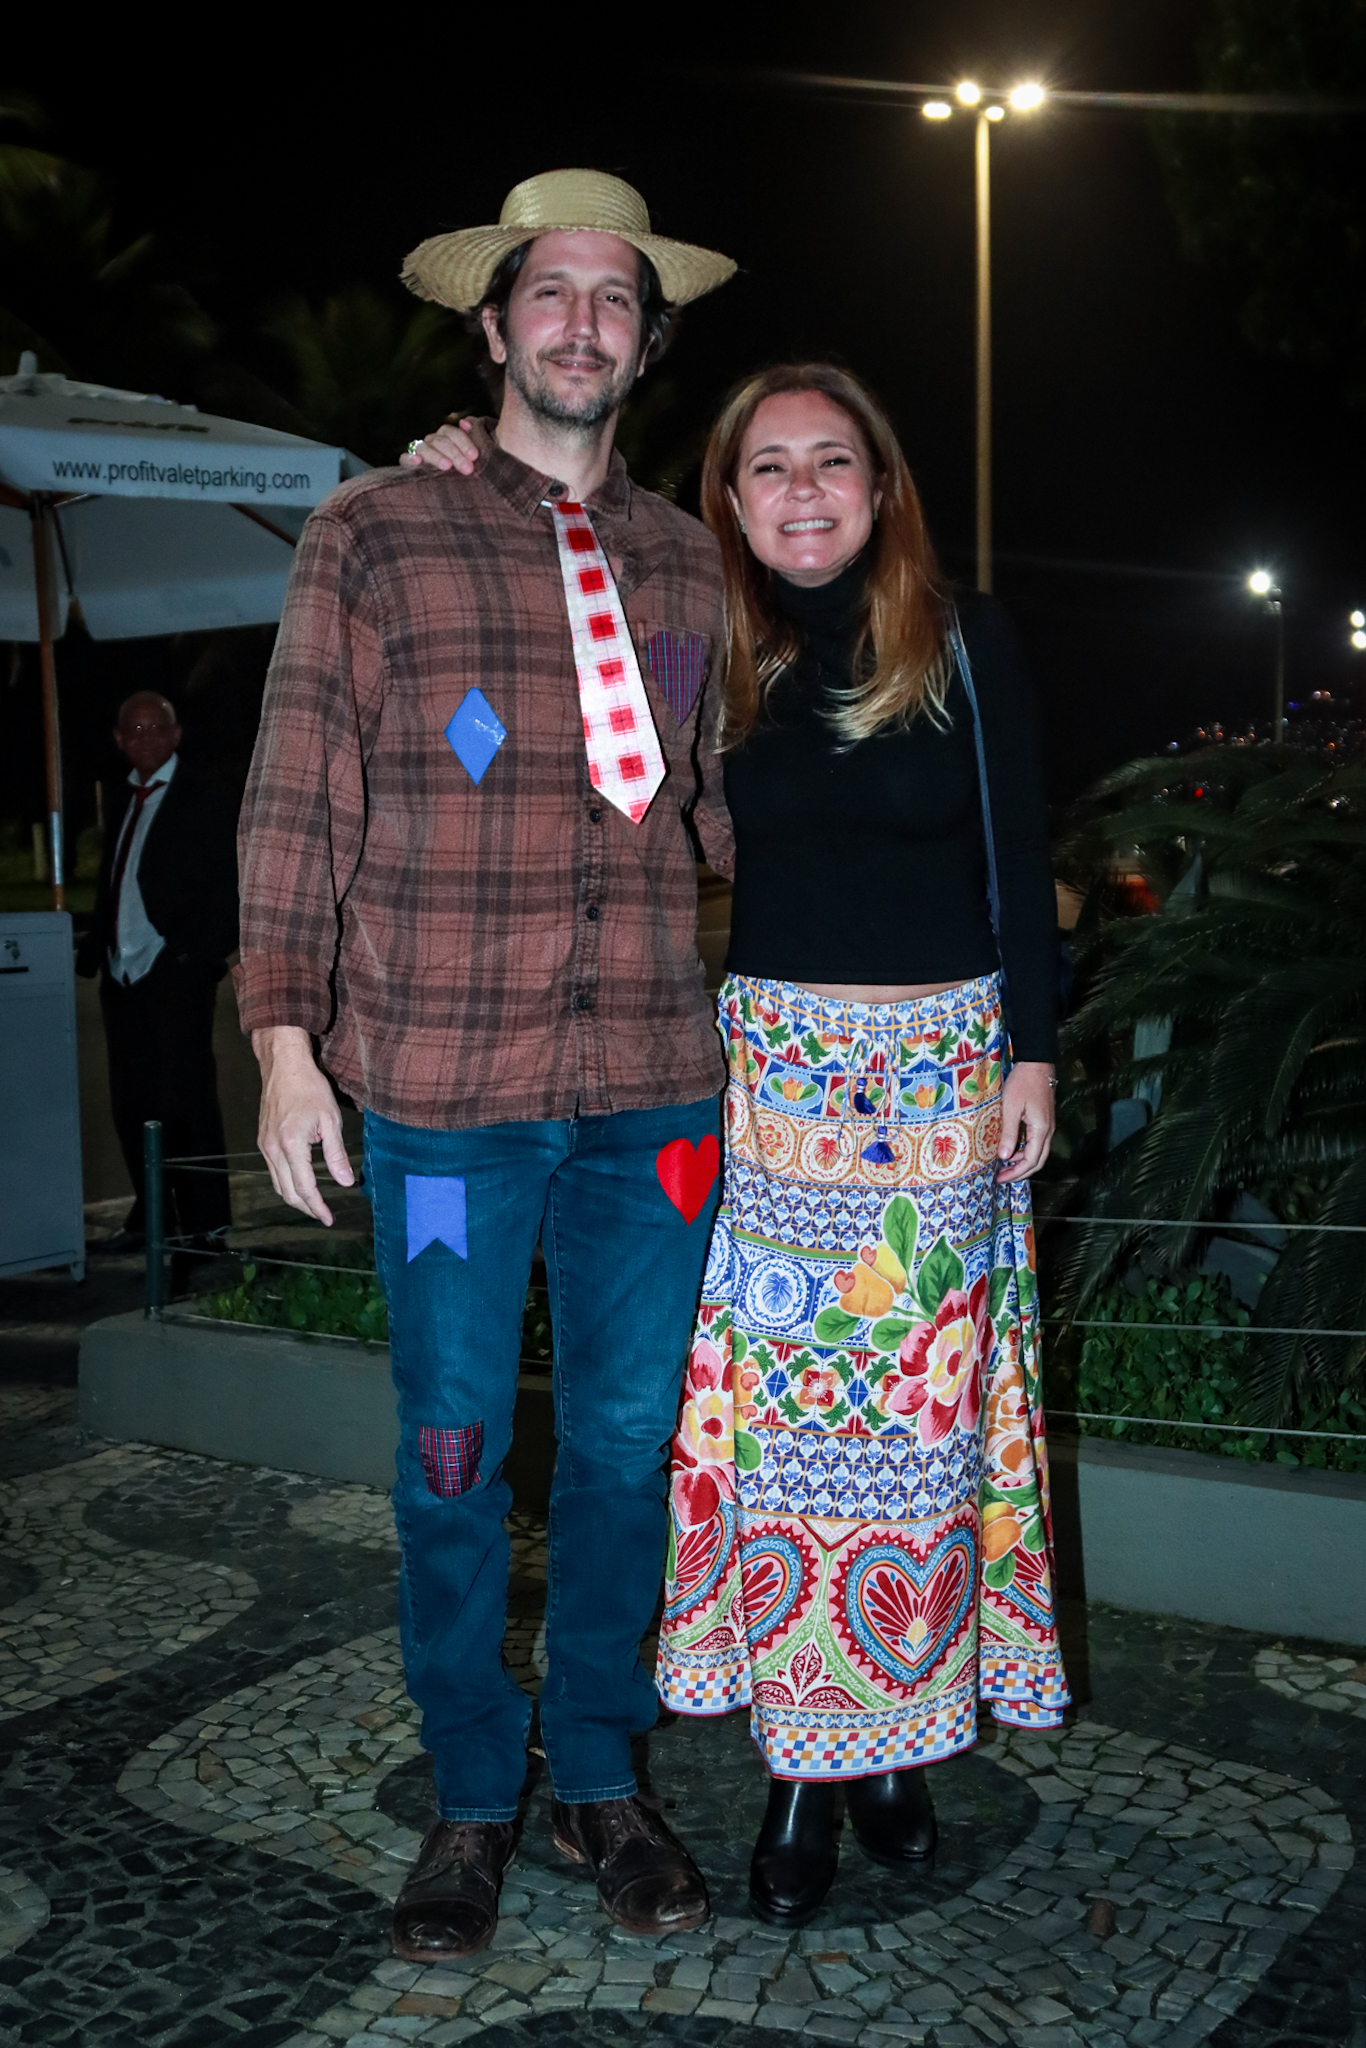 Famosos se divertem em festa junina no Rio de Janeiro